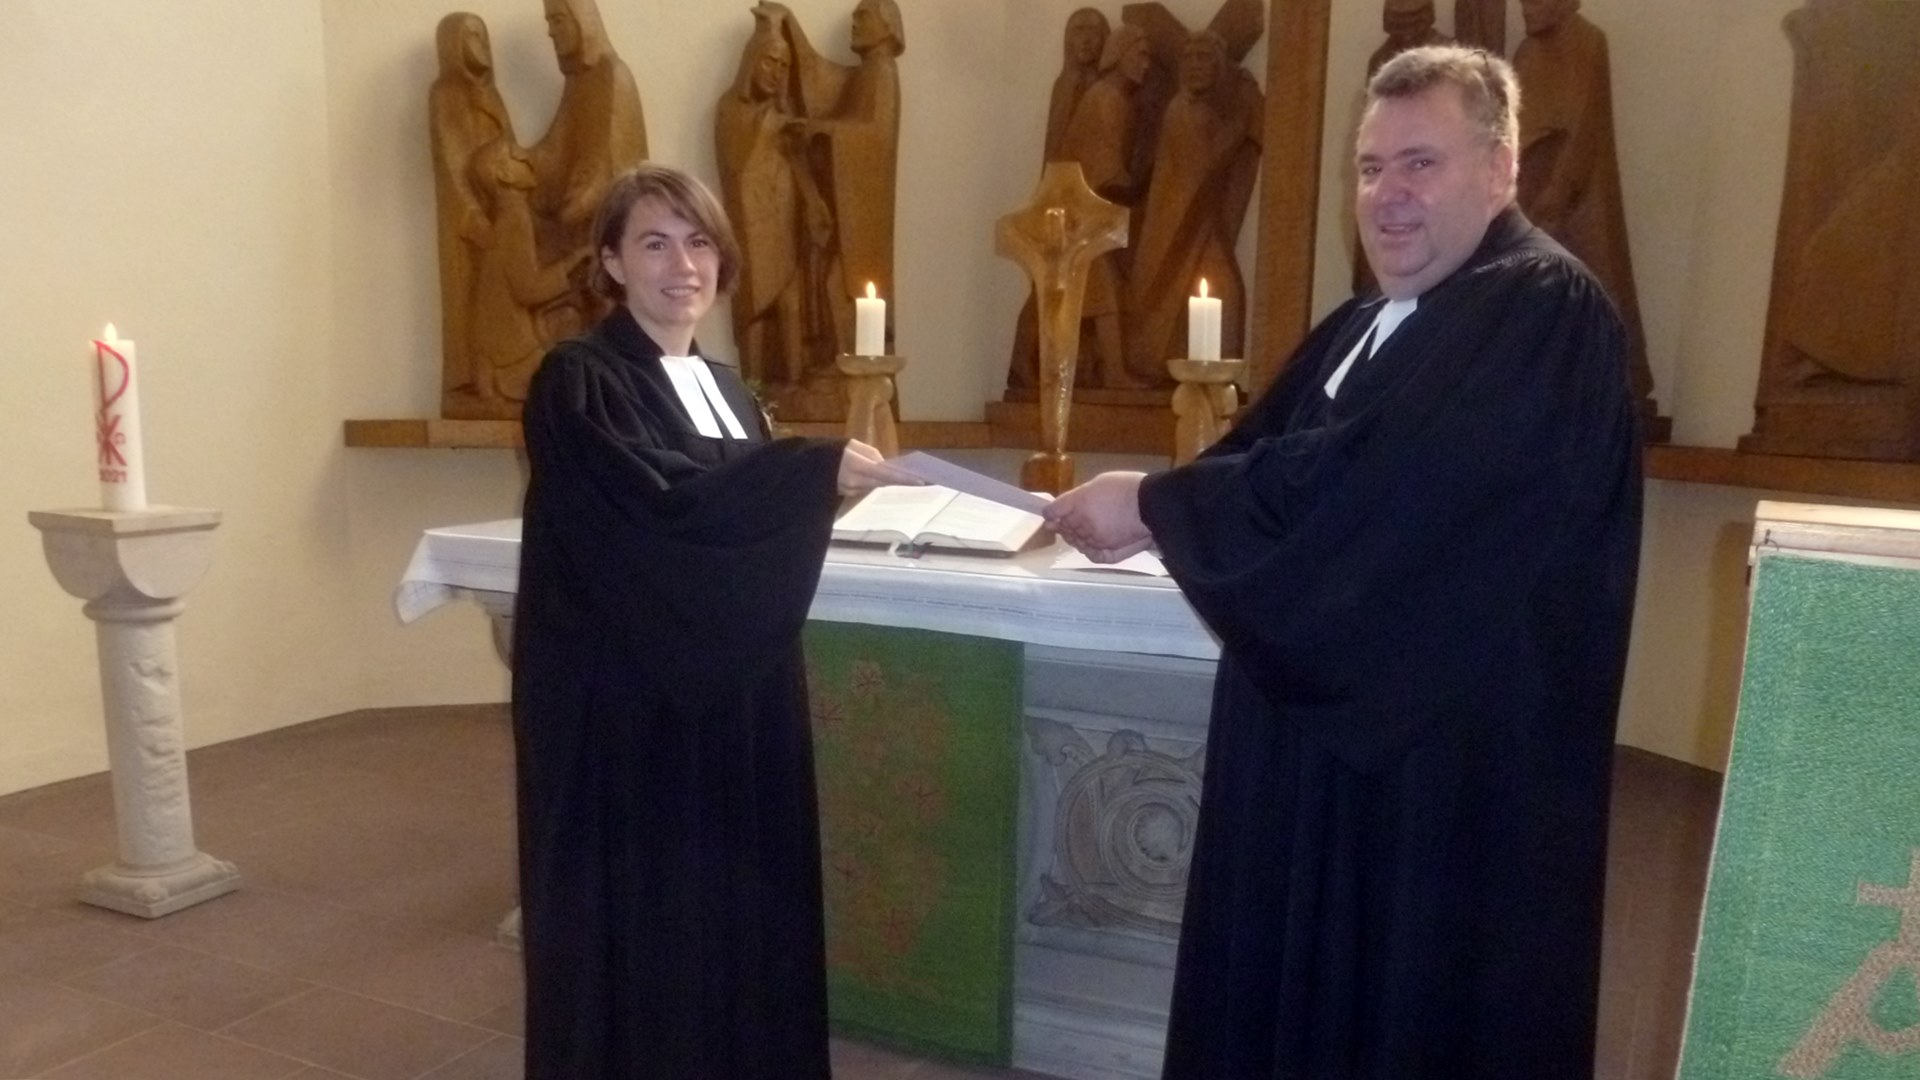 Propst Dieter Schultz-Seitz überreicht Pfarrerin Julia Jansen eine Urkunde. Dahinter steht ein Altar. Hinter dem Altar stehen mehrere Holzfiguren.